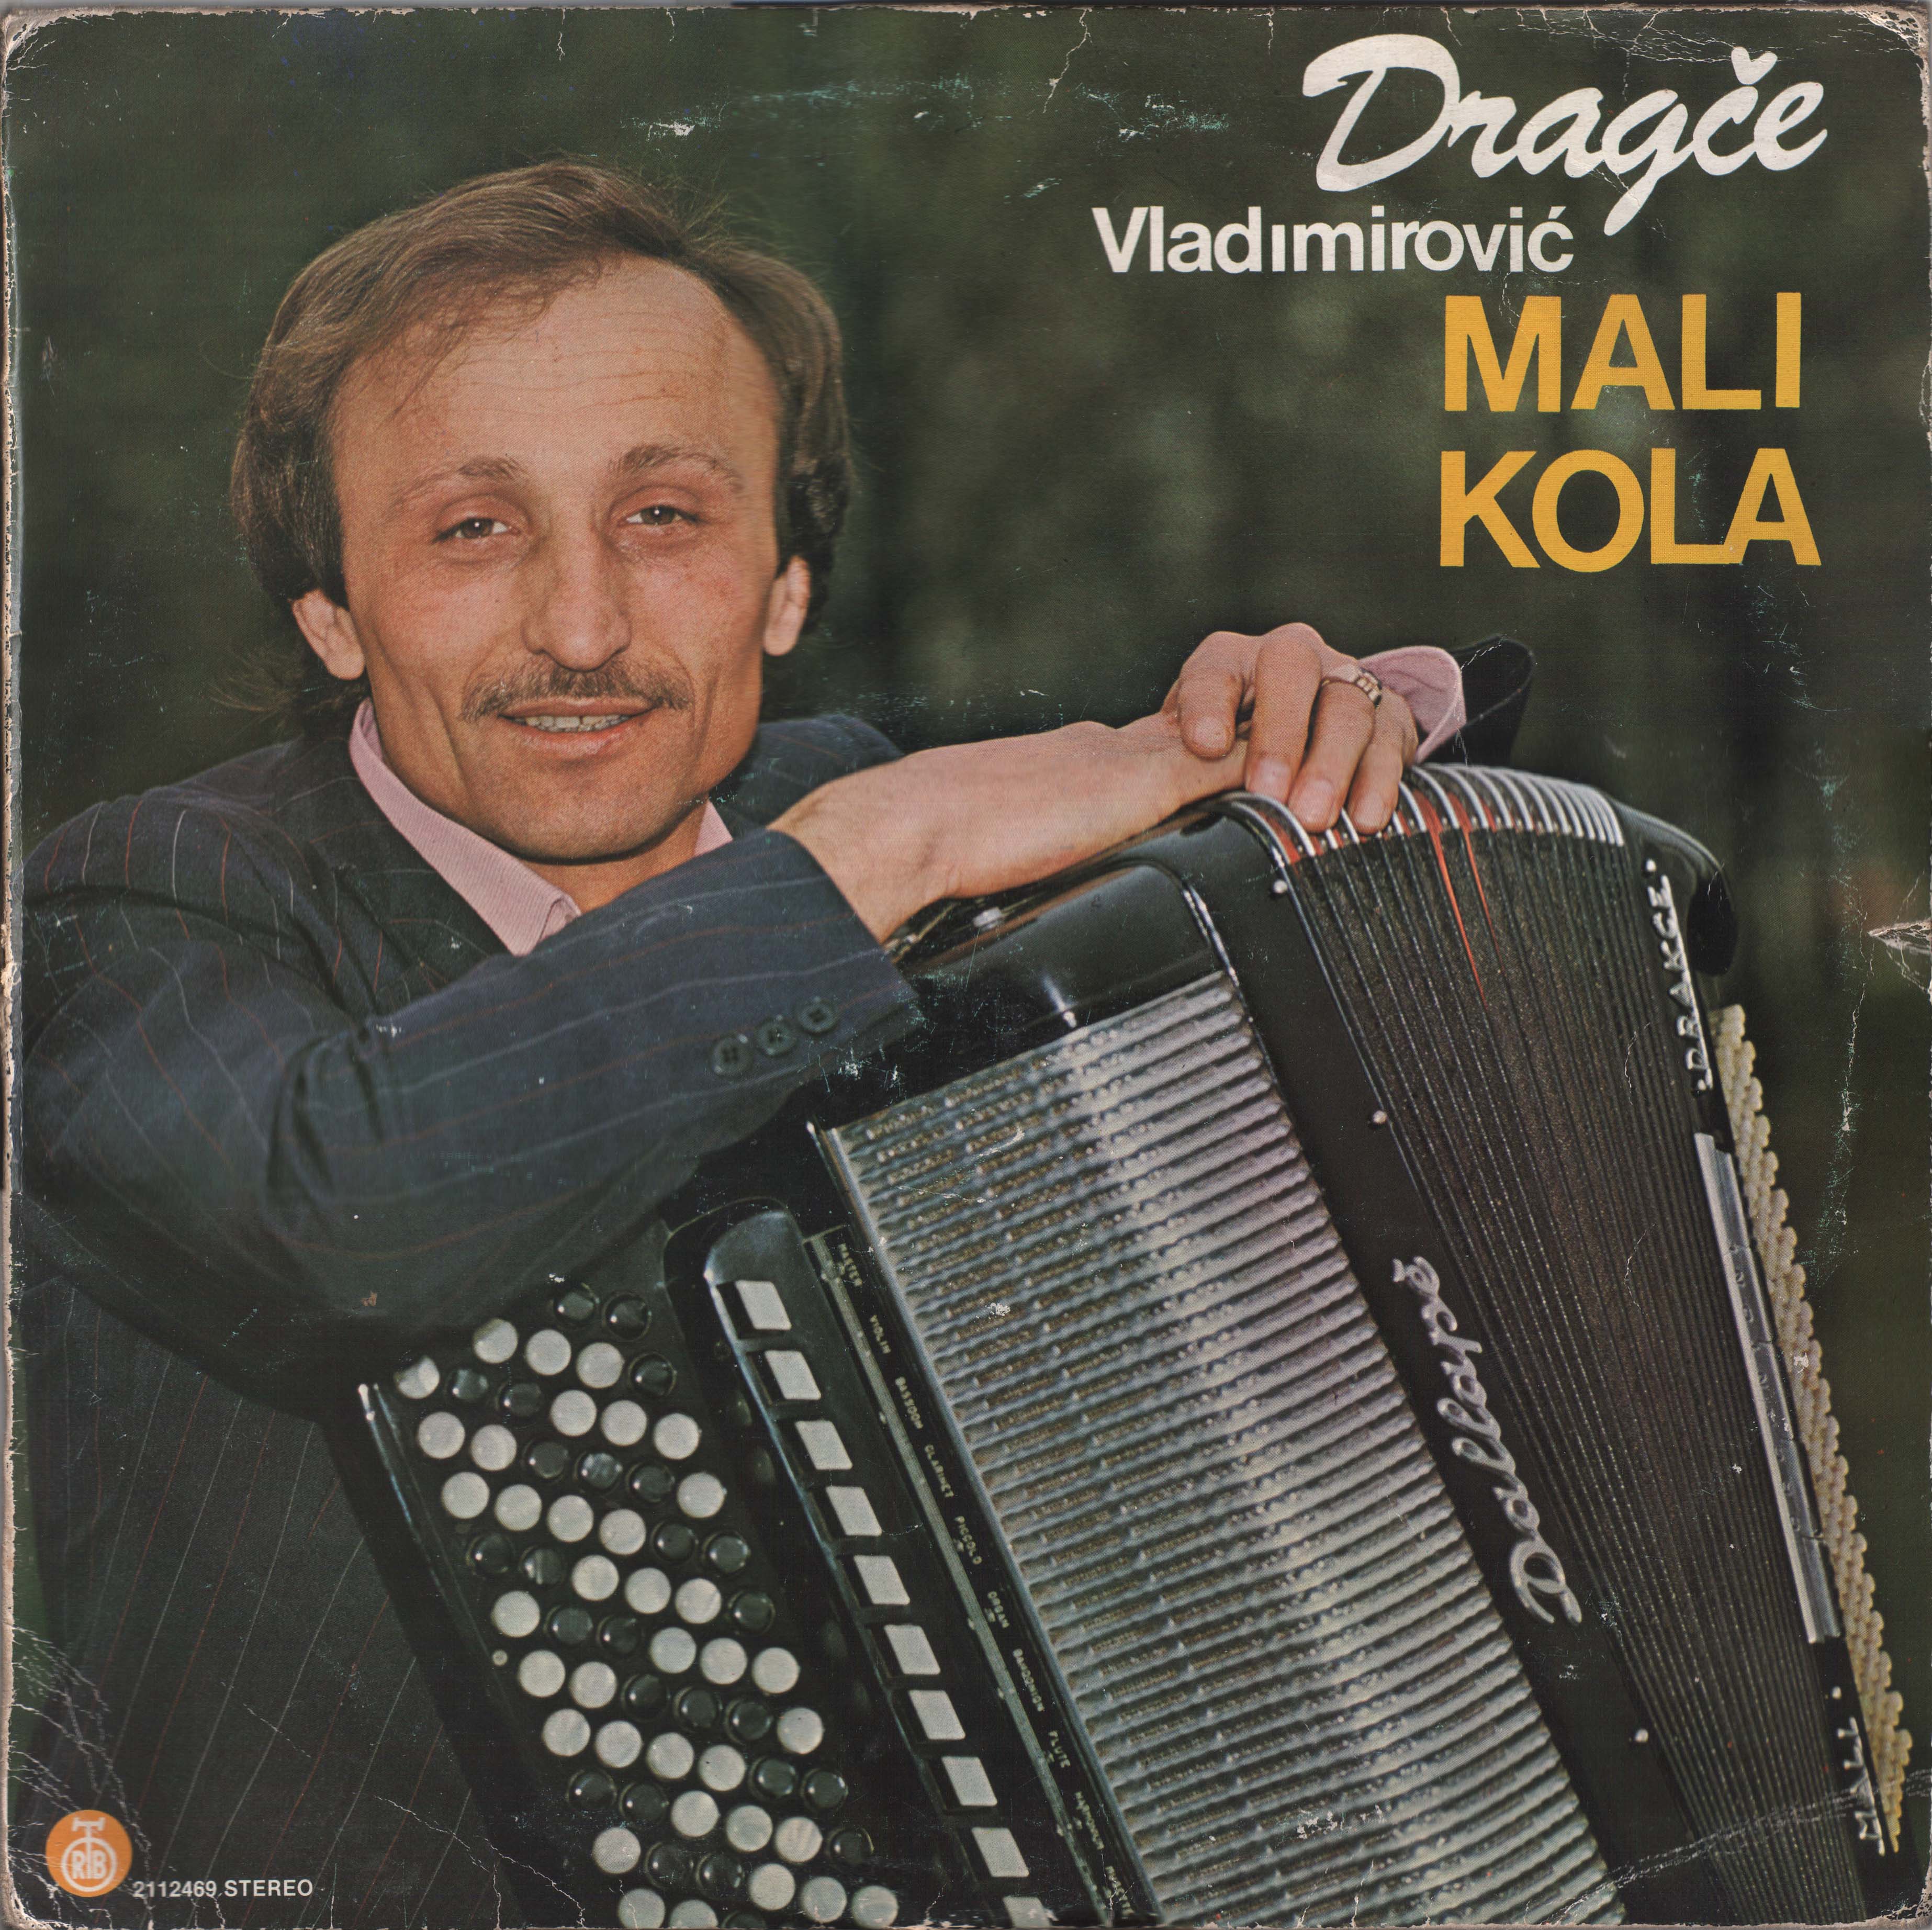 Dragce Vladimirovic Mali 1985 P